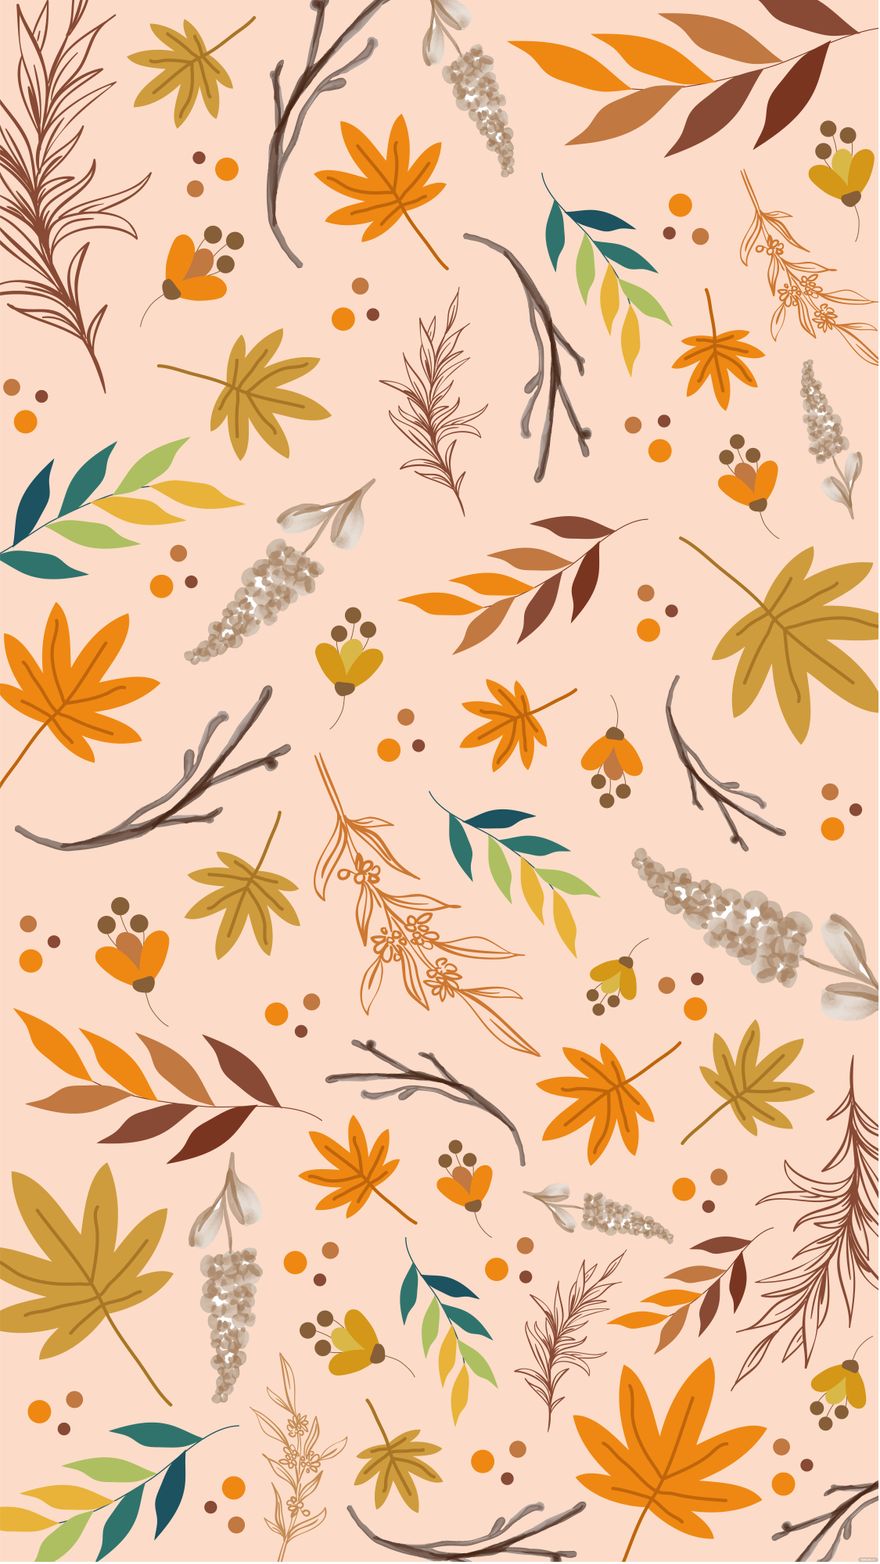 Free Vintage Fall Floral Background in Illustrator, EPS, SVG, JPG